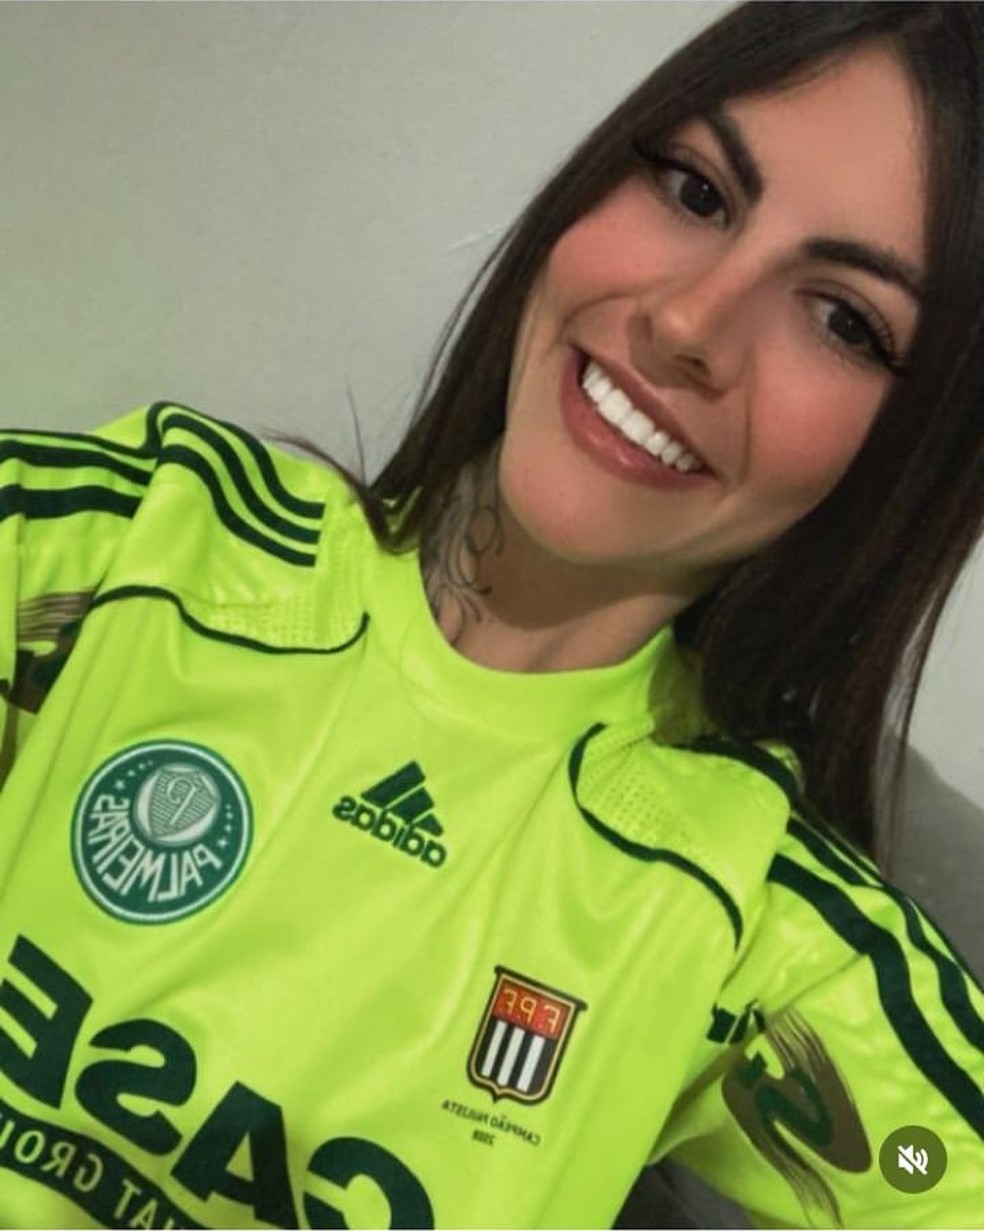 Gabriela Anelli, 23 anos, torcedora ferida em confusão no jogo Palmeiras x Flamengo — Foto: Arquivo pessoal